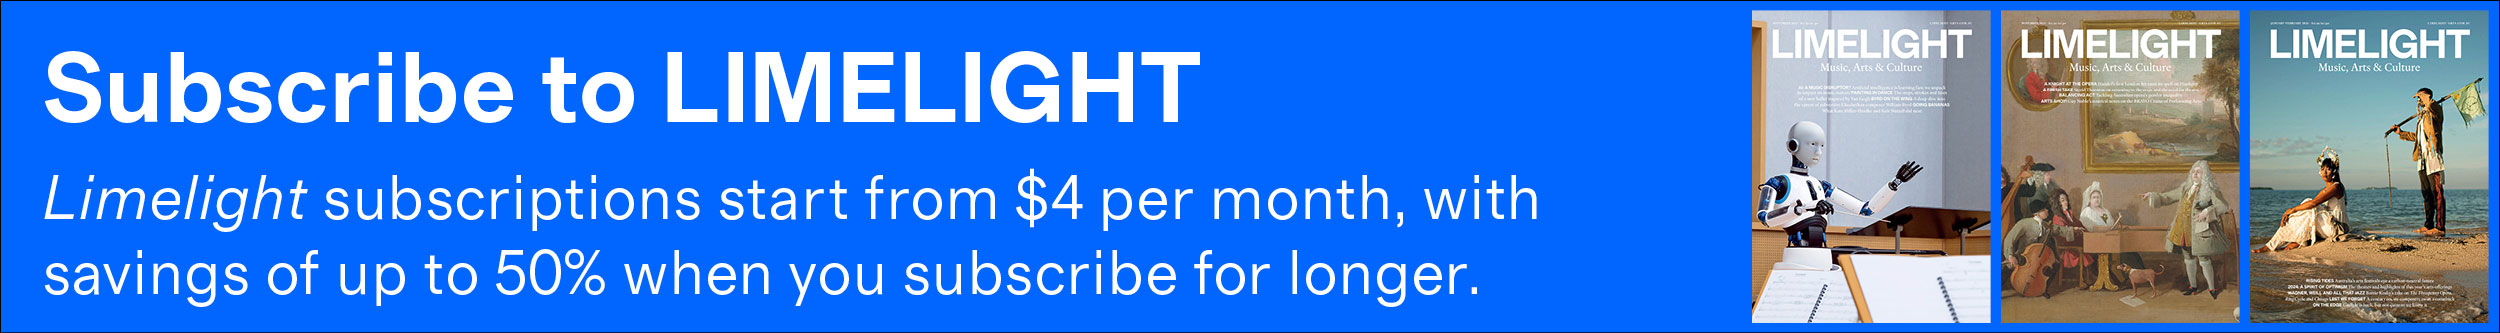 Os planos Limelight começam em US$ 4 por mês, com economia de até 50% quanto mais tempo você assinar.